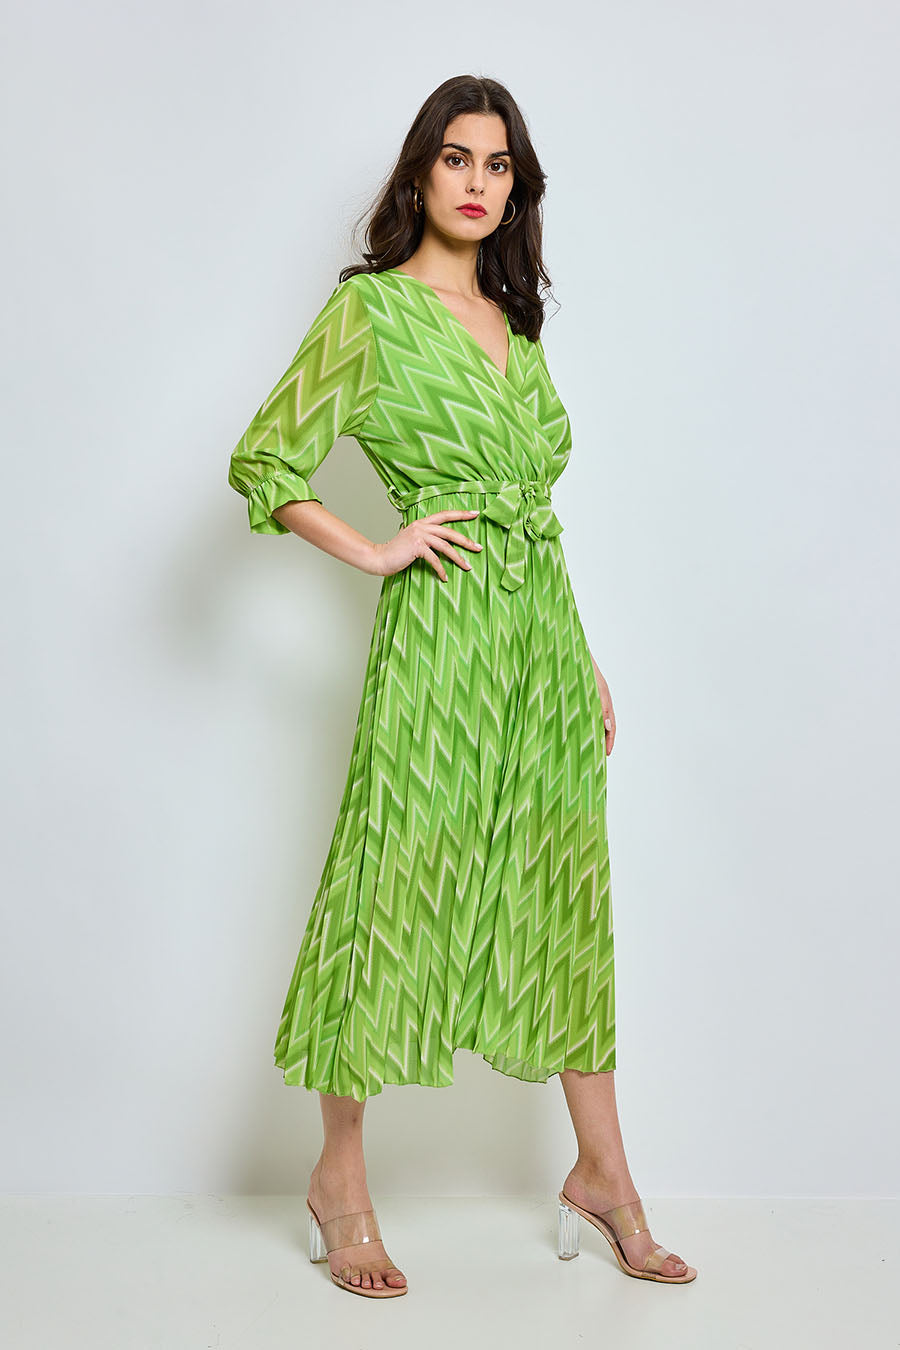 Γυναικείο φόρεμα Karisa, Πράσινο 2